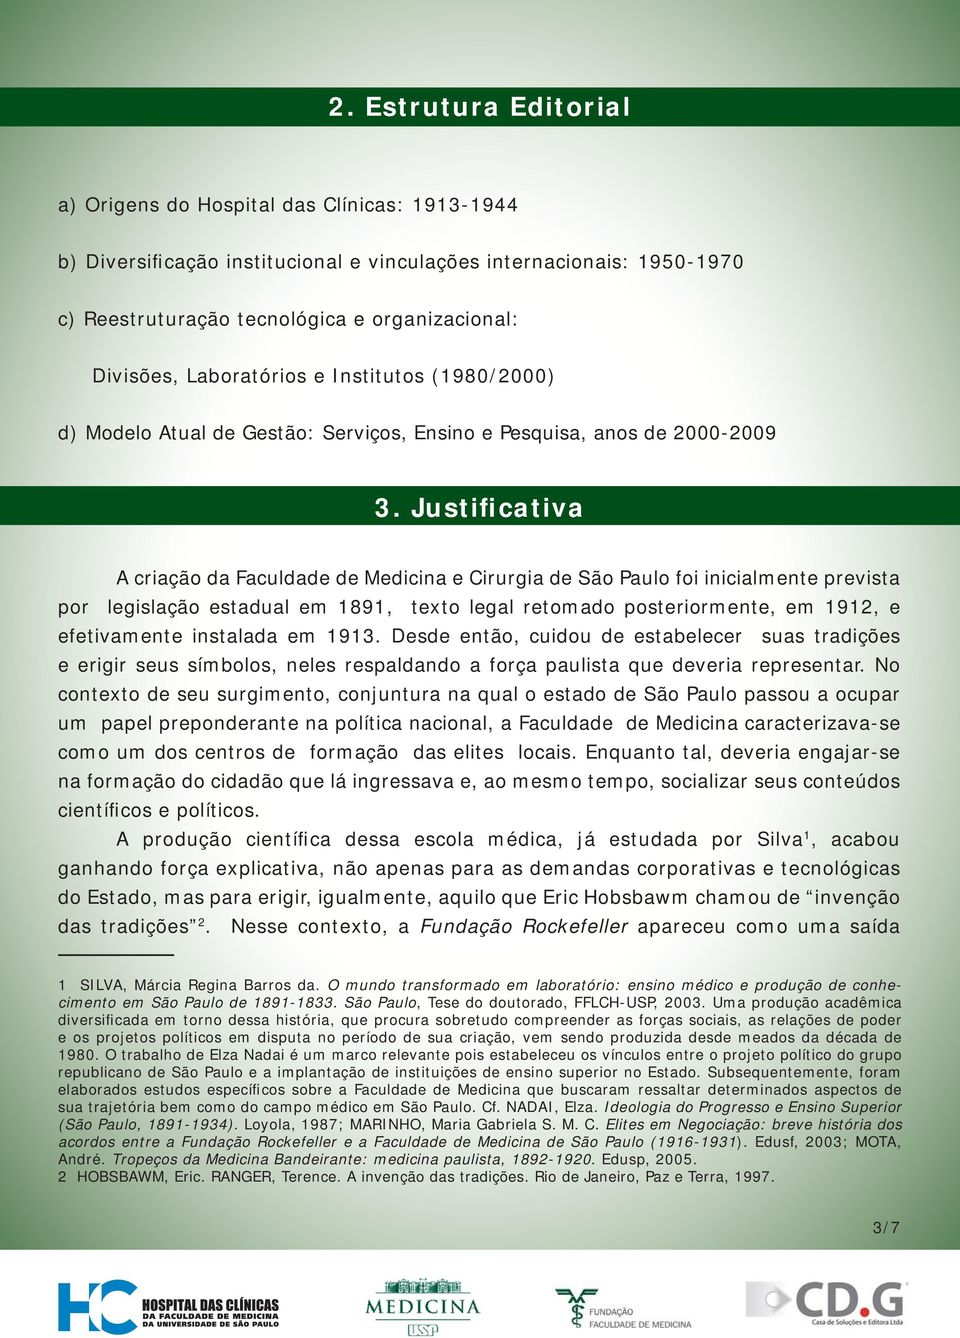 Justificativa A criação da Faculdade de Medicina e Cirurgia de São Paulo foi inicialmente prevista por legislação estadual em 1891, texto legal retomado posteriormente, em 1912, e efetivamente